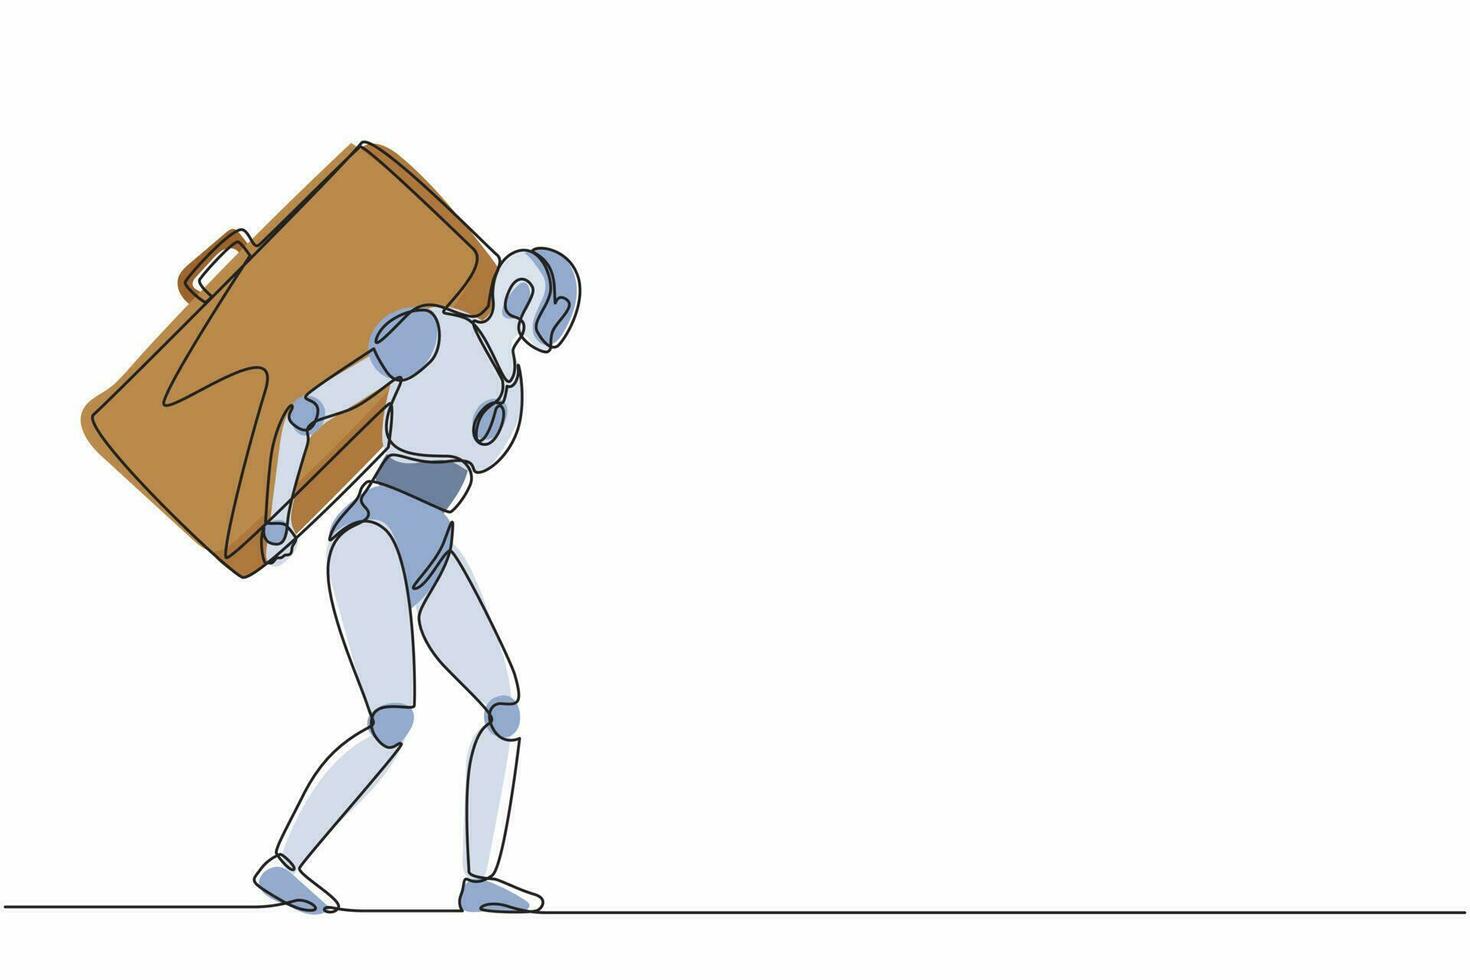 kontinuierlich einzeilige Zeichenroboter, die stehen und einen schweren, riesigen Aktenkoffer tragen. humanoider Roboter kybernetischer Organismus. zukünftiges robotikentwicklungskonzept. Vektorgrafik-Illustration für einzeiliges Design vektor